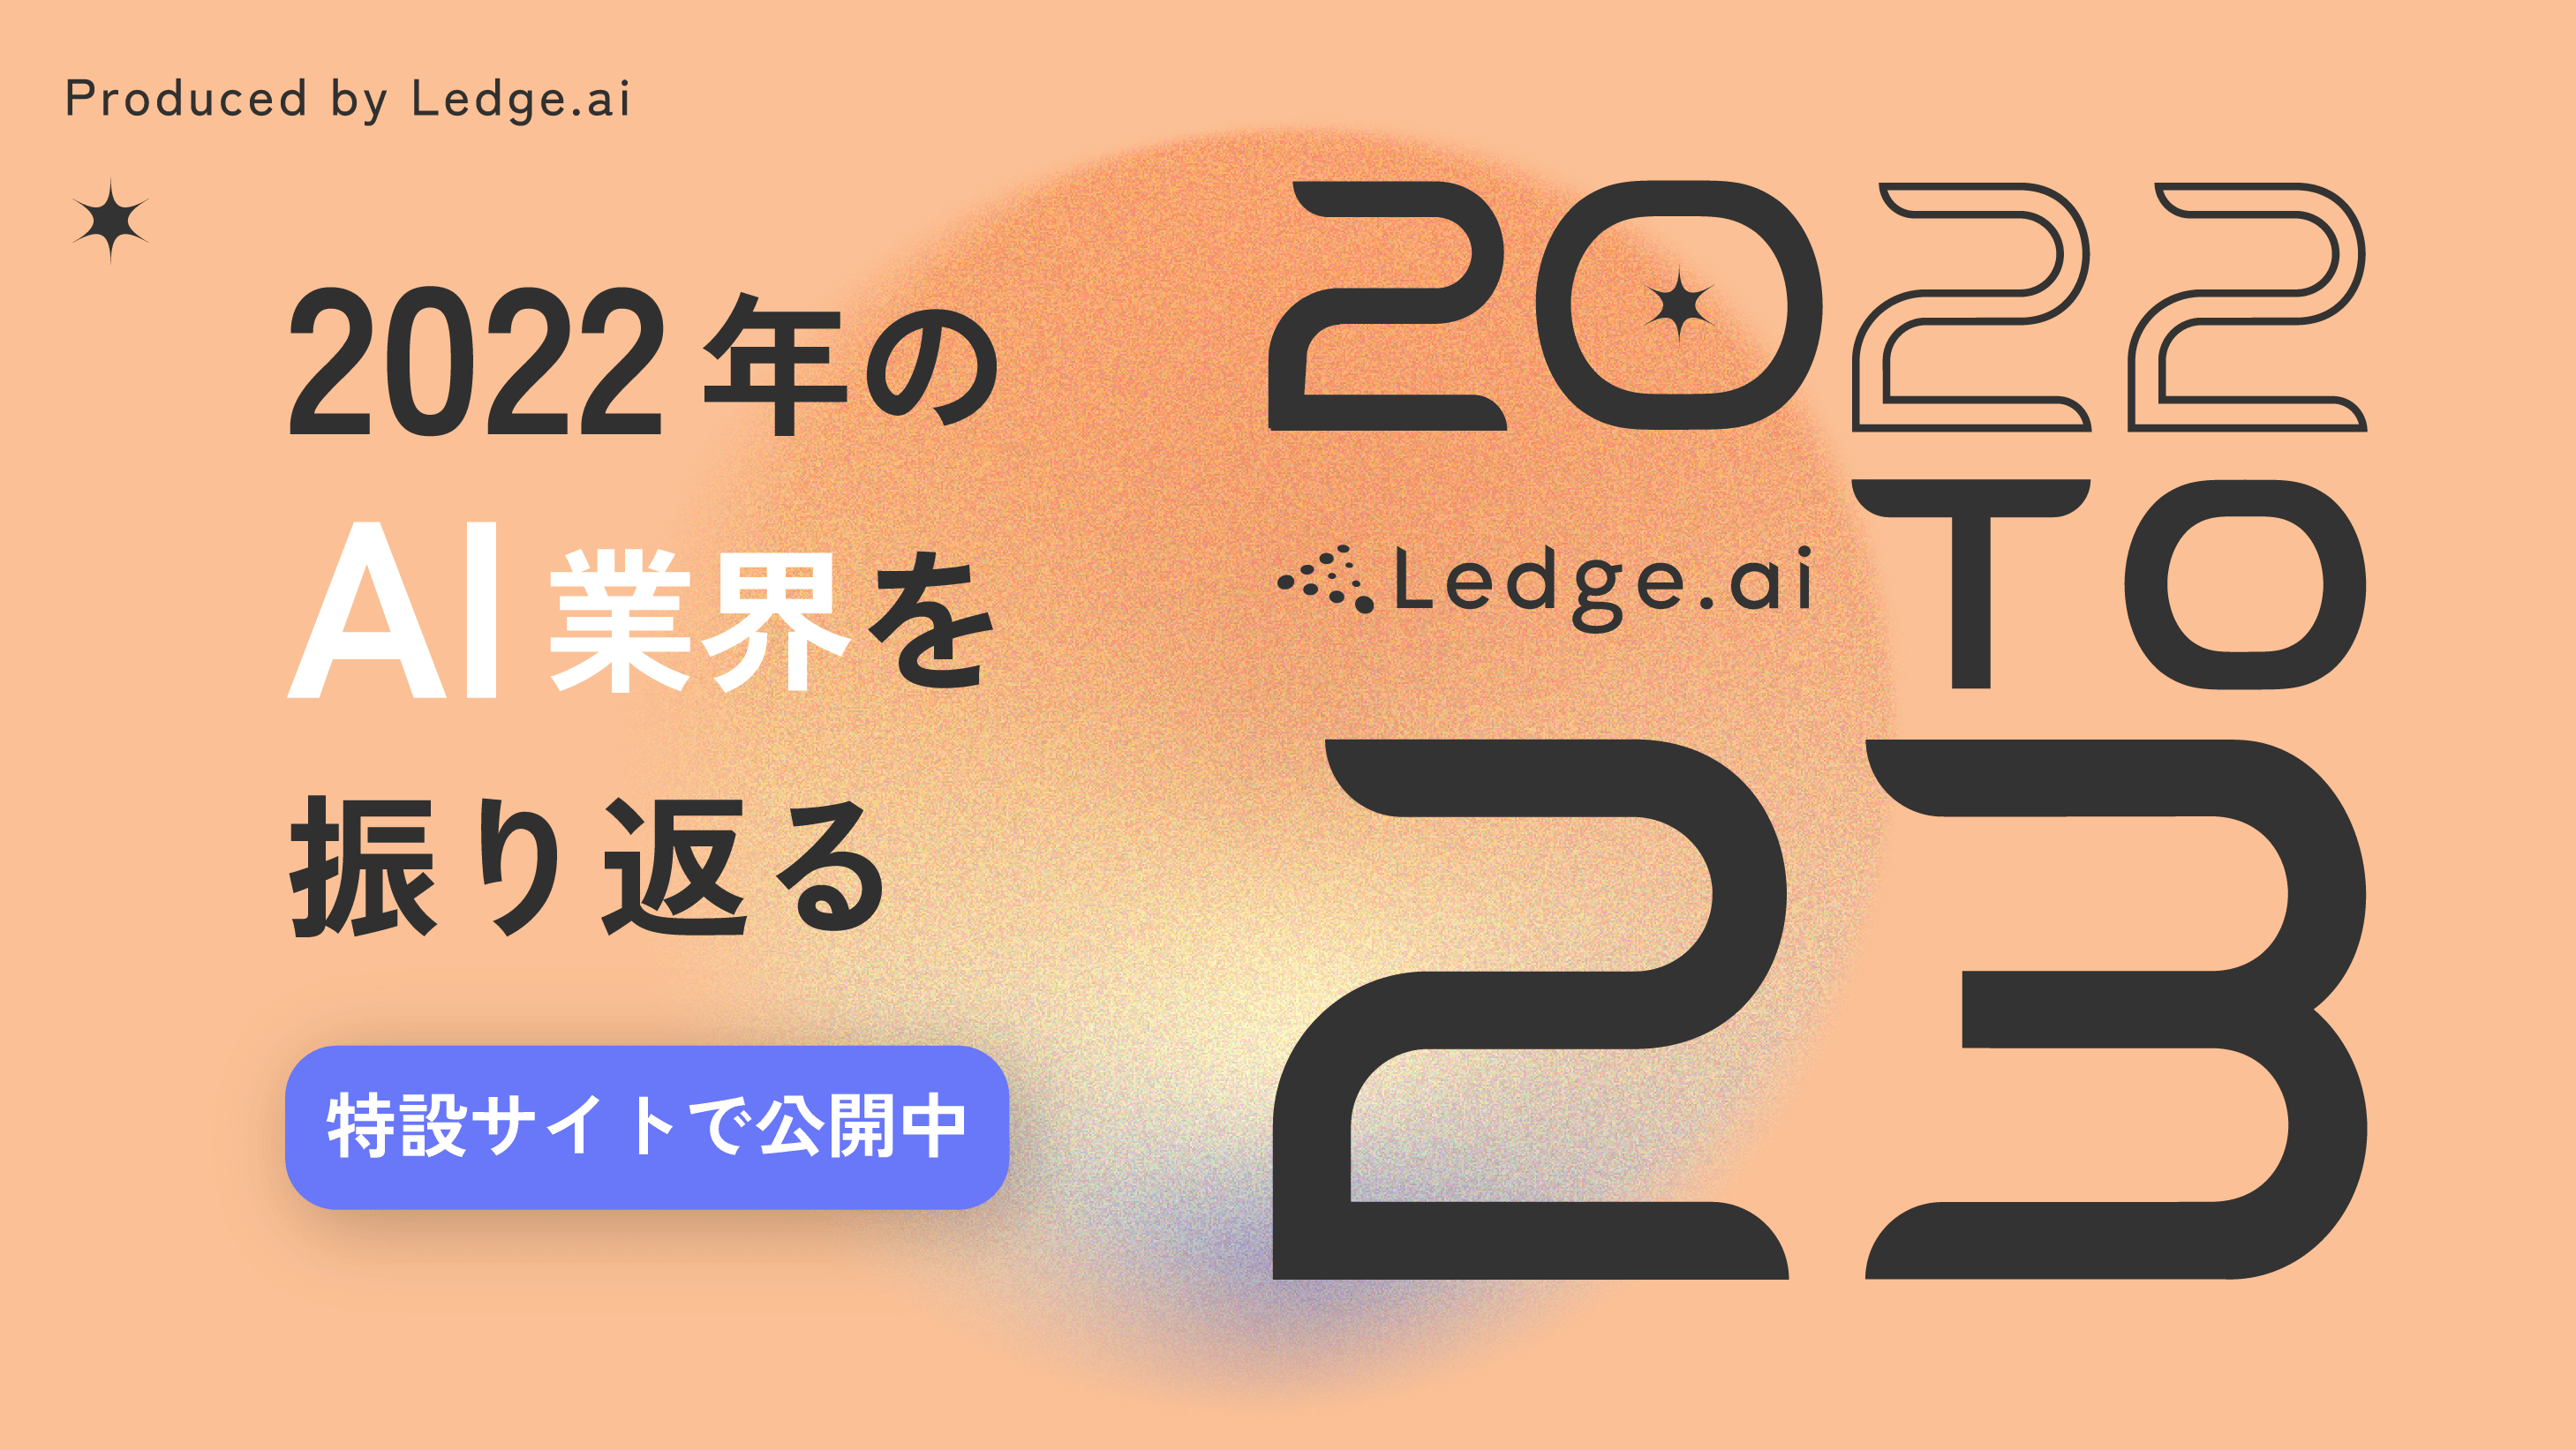 【延長公開】2022年のAI関連ニュースなどをまとめた特設サイト「Ledge.ai 22to23」のサムネイル画像